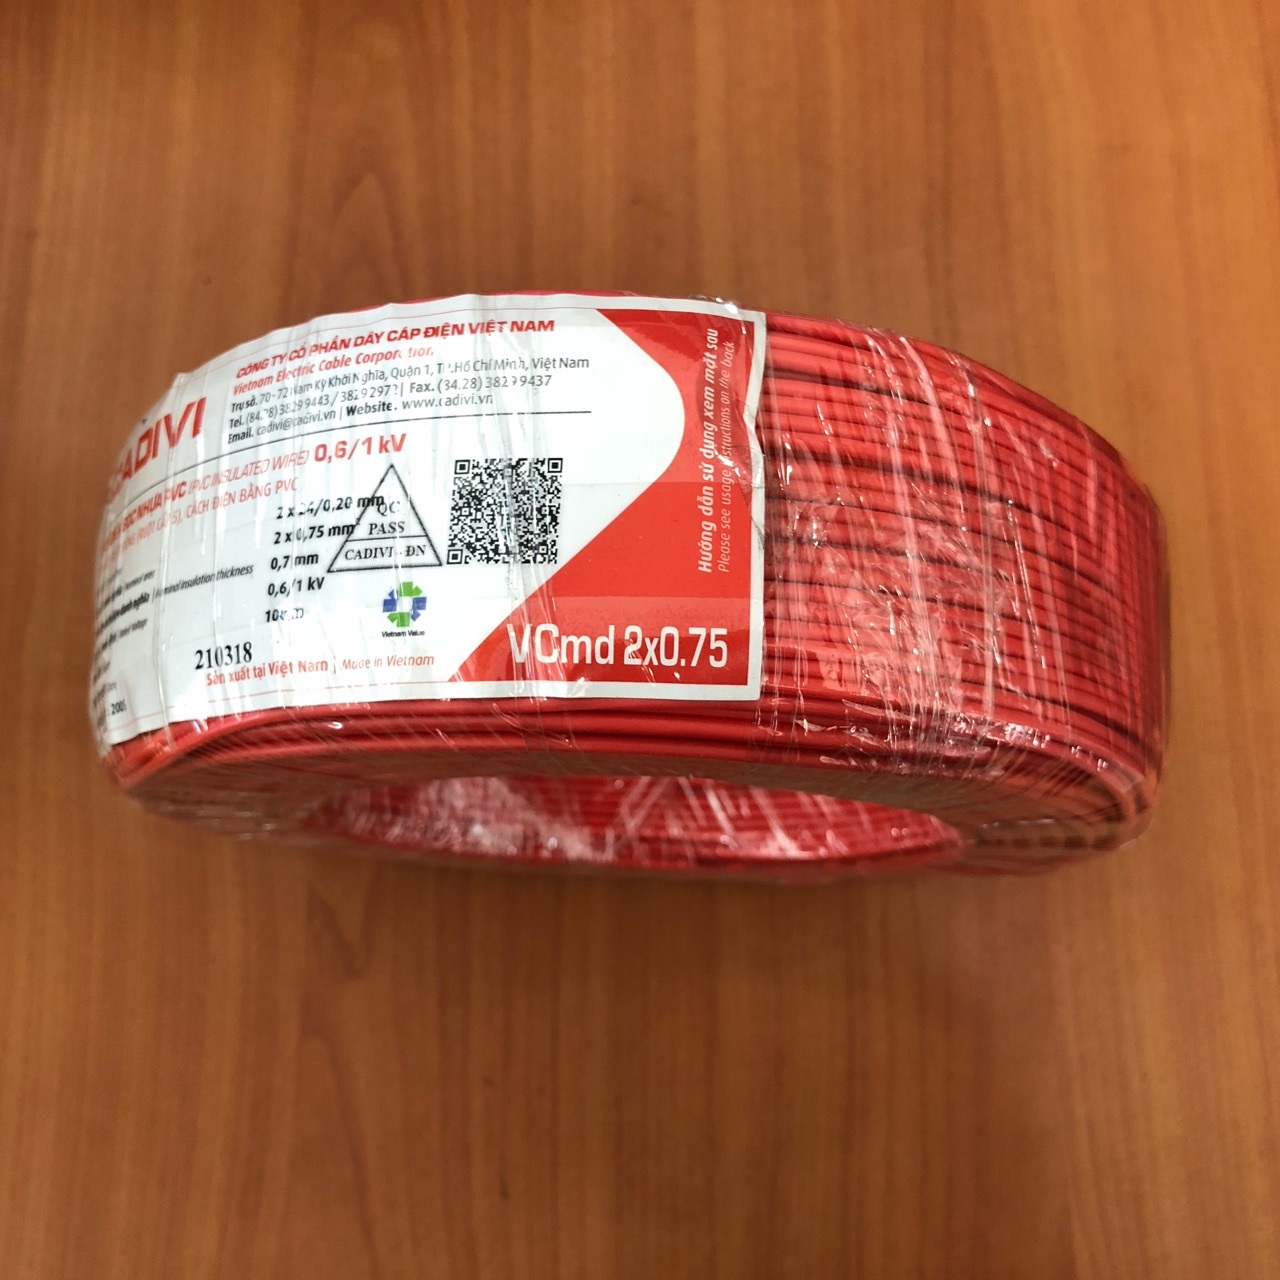 Dây cáp điện đôi mềm (dây dẹp) Vcmd Cadivi 2x0,75 màu đỏ, ruột đồng bọc nhựa PVC, cuộn 100 mét